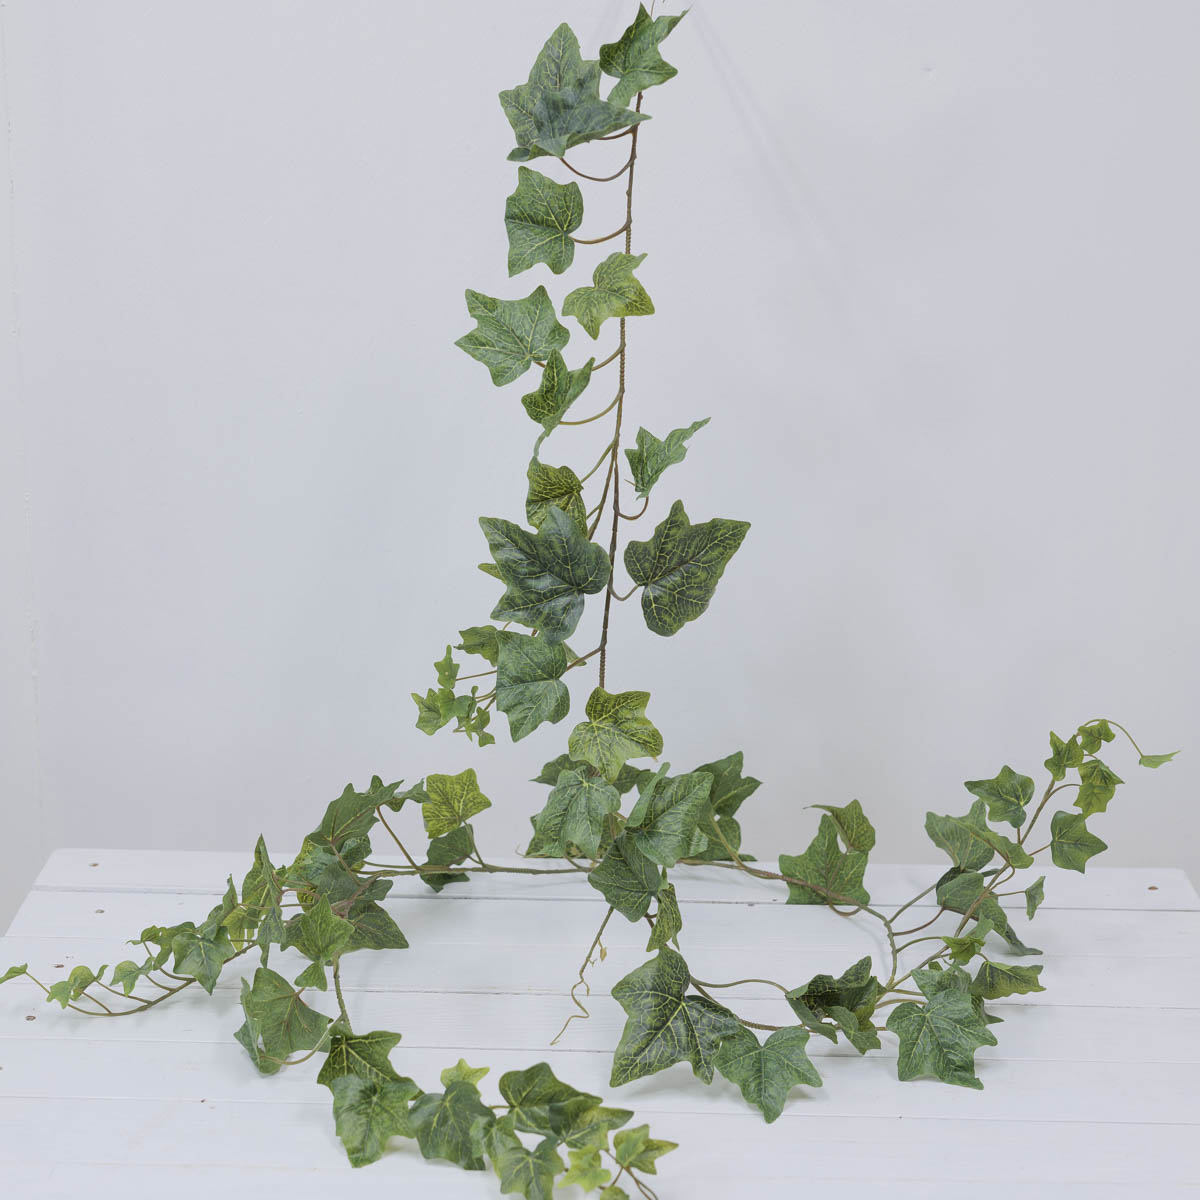 조화넝쿨 네추럴 잎사귀 갈란드 184cm 시즌2 아이비잎